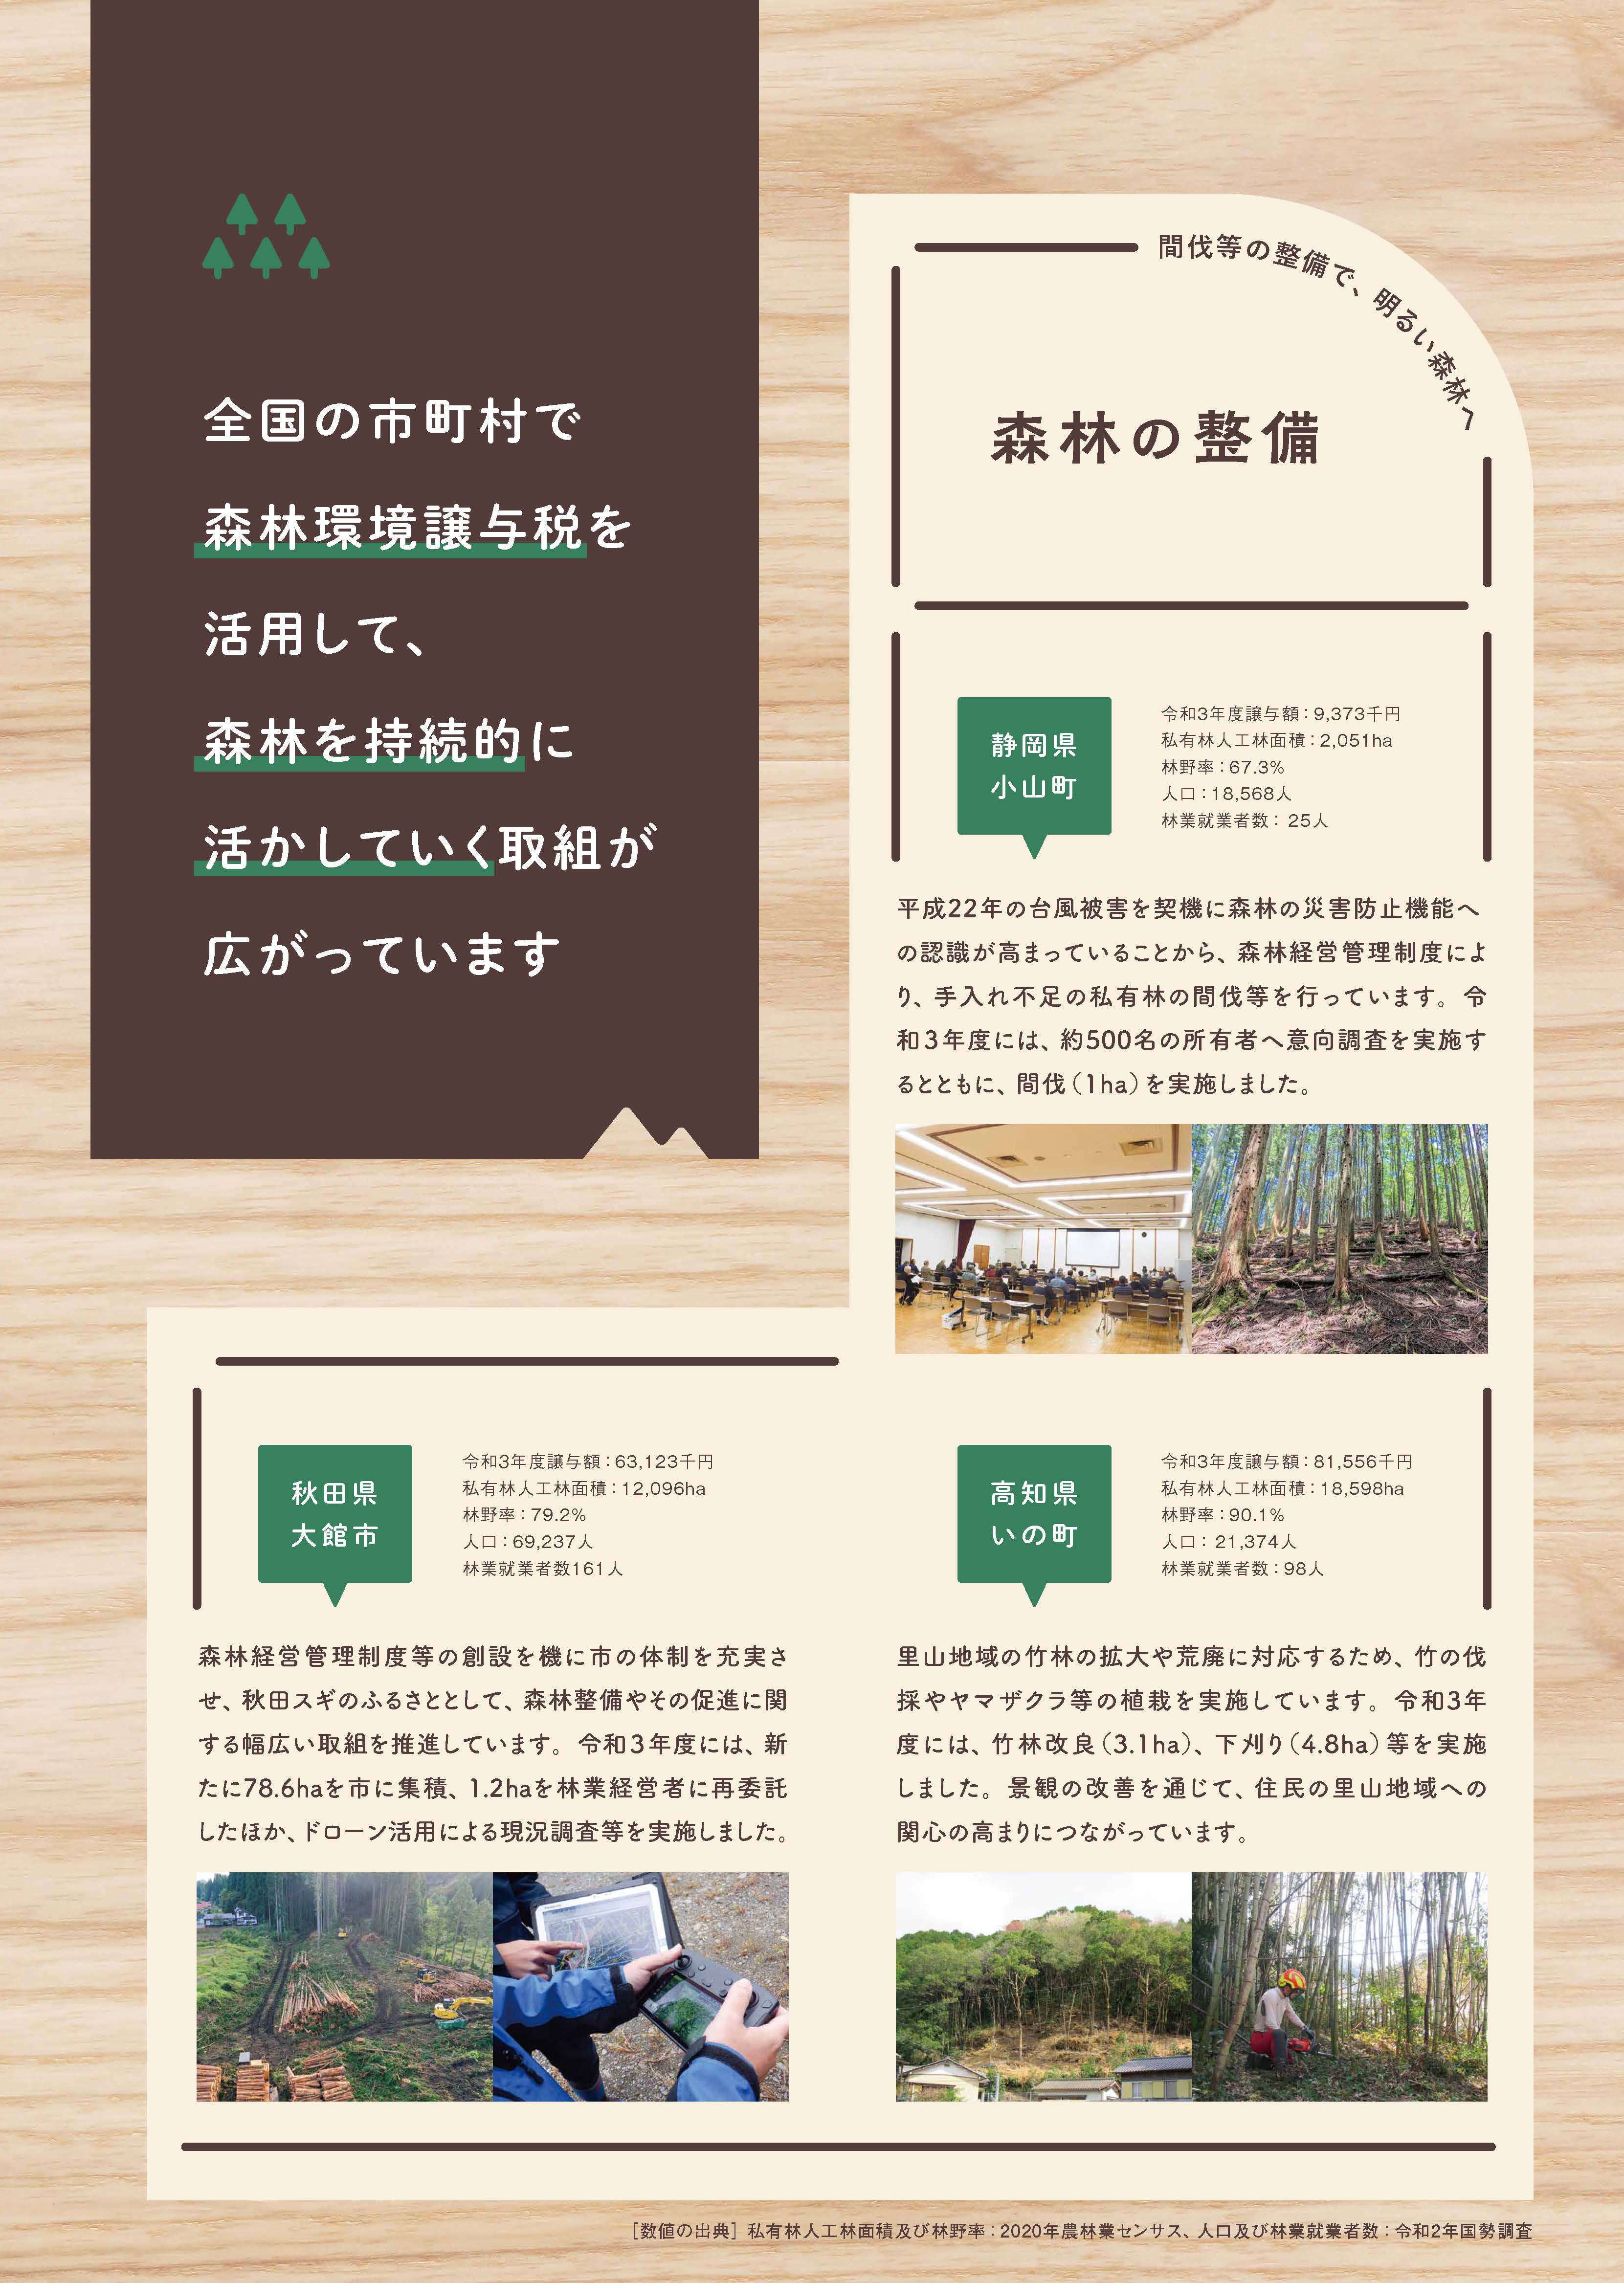 森林環境譲与税を活用した地方自治体の取組の紹介 Vol.1 鳥取県八頭町